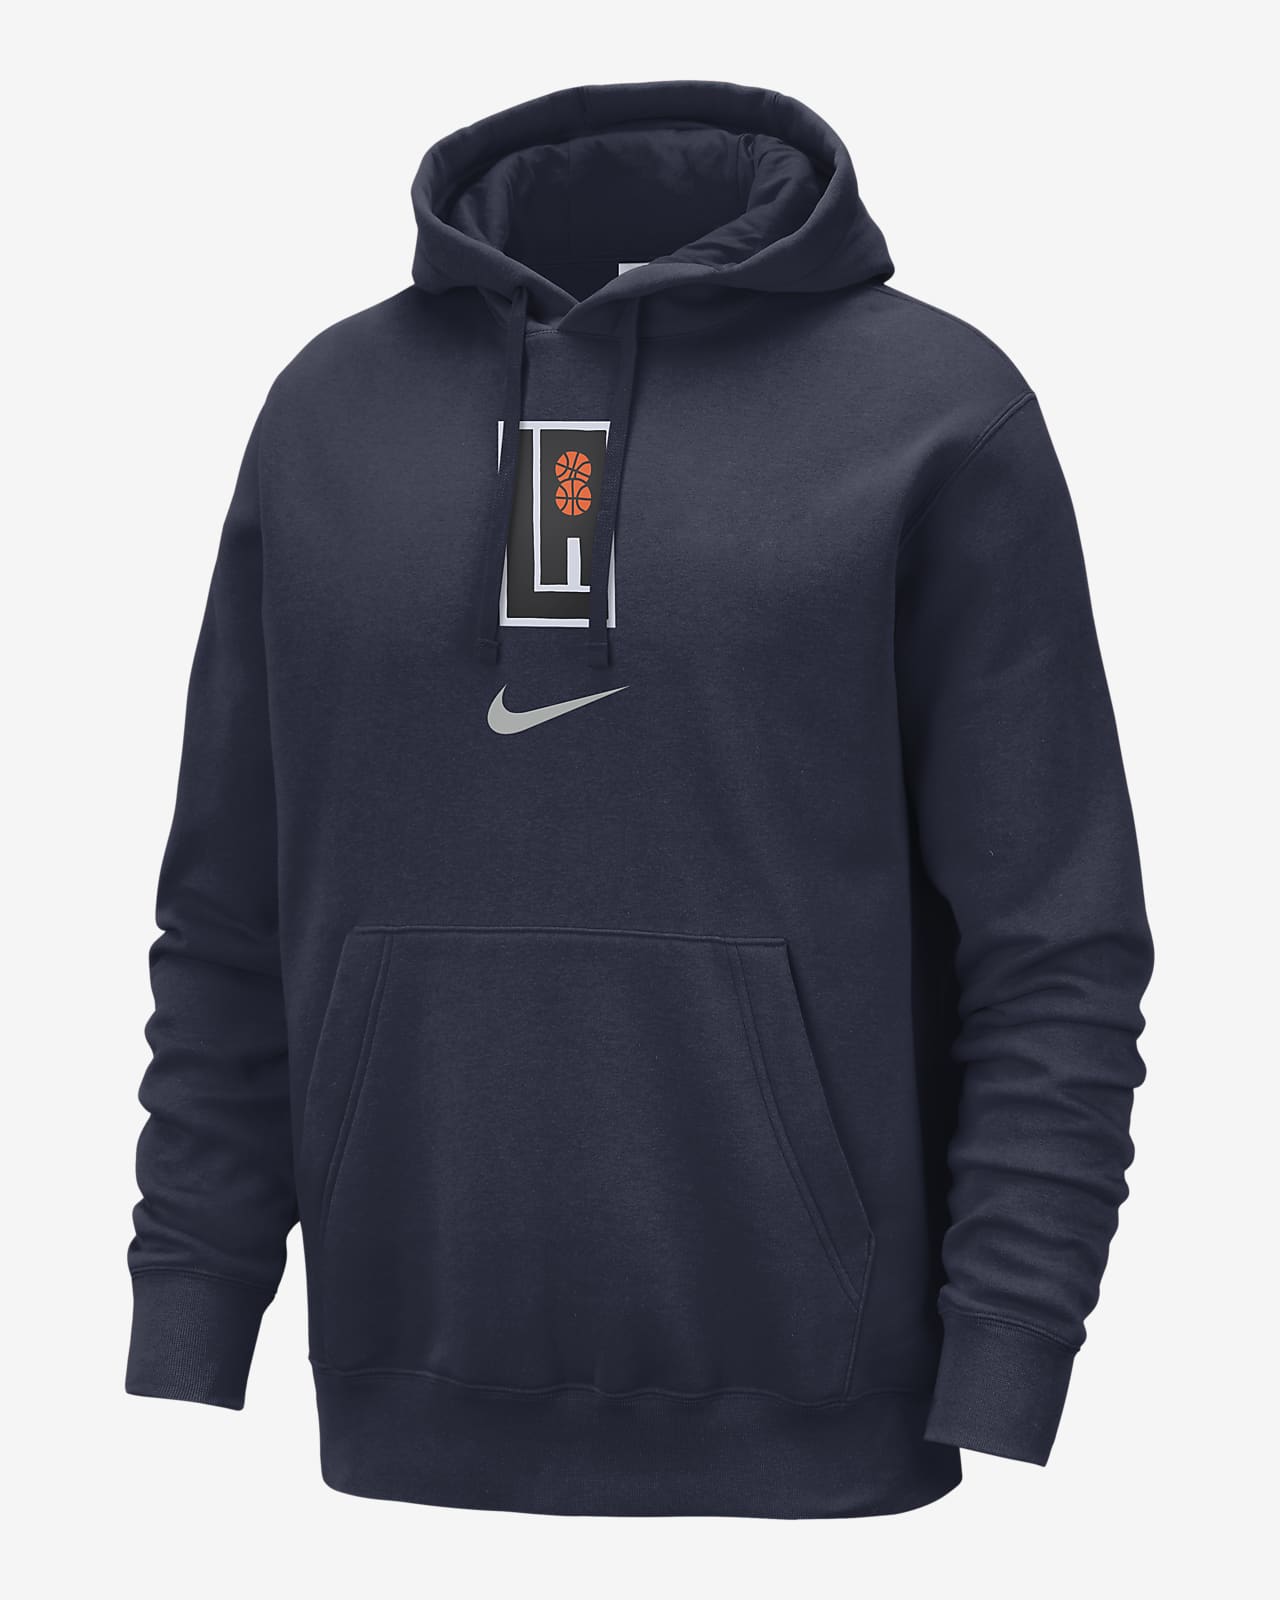 LA Clippers Club Fleece City Edition Nike NBA-pullover-hættetrøje til mænd